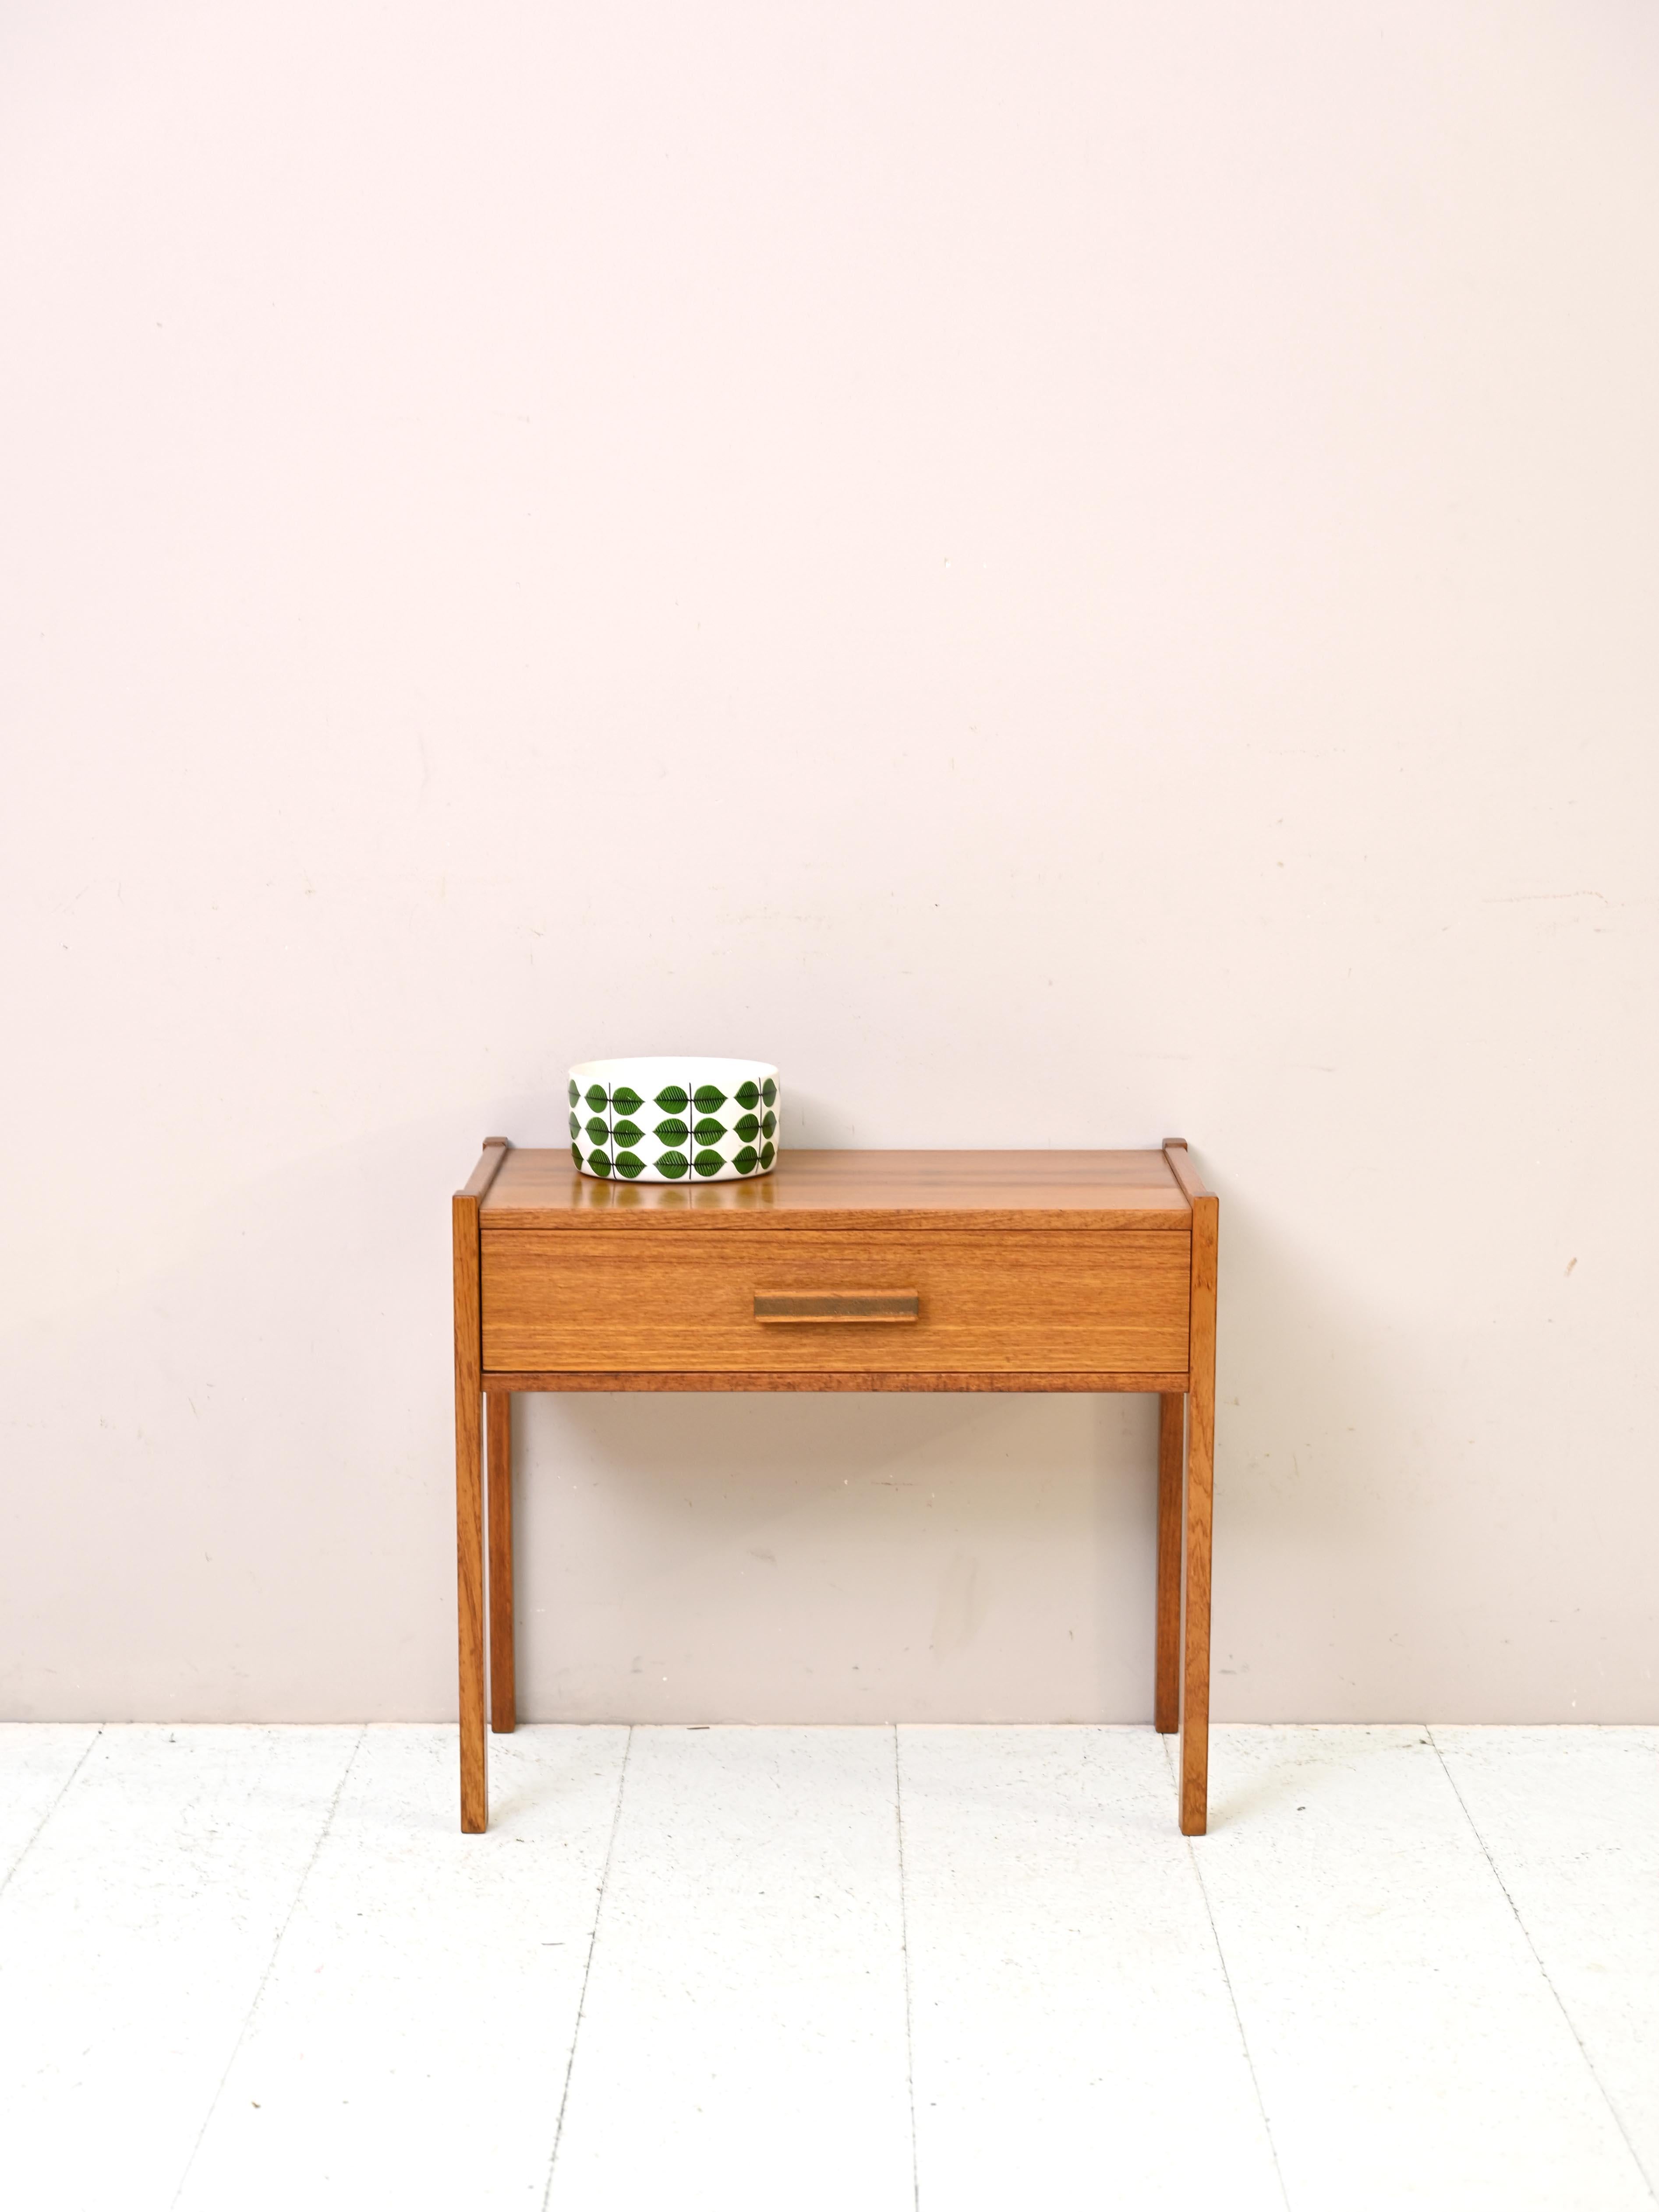 Table basse vintage en teck des années 1960.
Un meuble unique qui reflète le design élégant et fonctionnel des années 1960. Cette table d'appoint en teck est dotée de pieds carrés fins et d'une poignée en bois caractéristique. Adaptée à toutes les